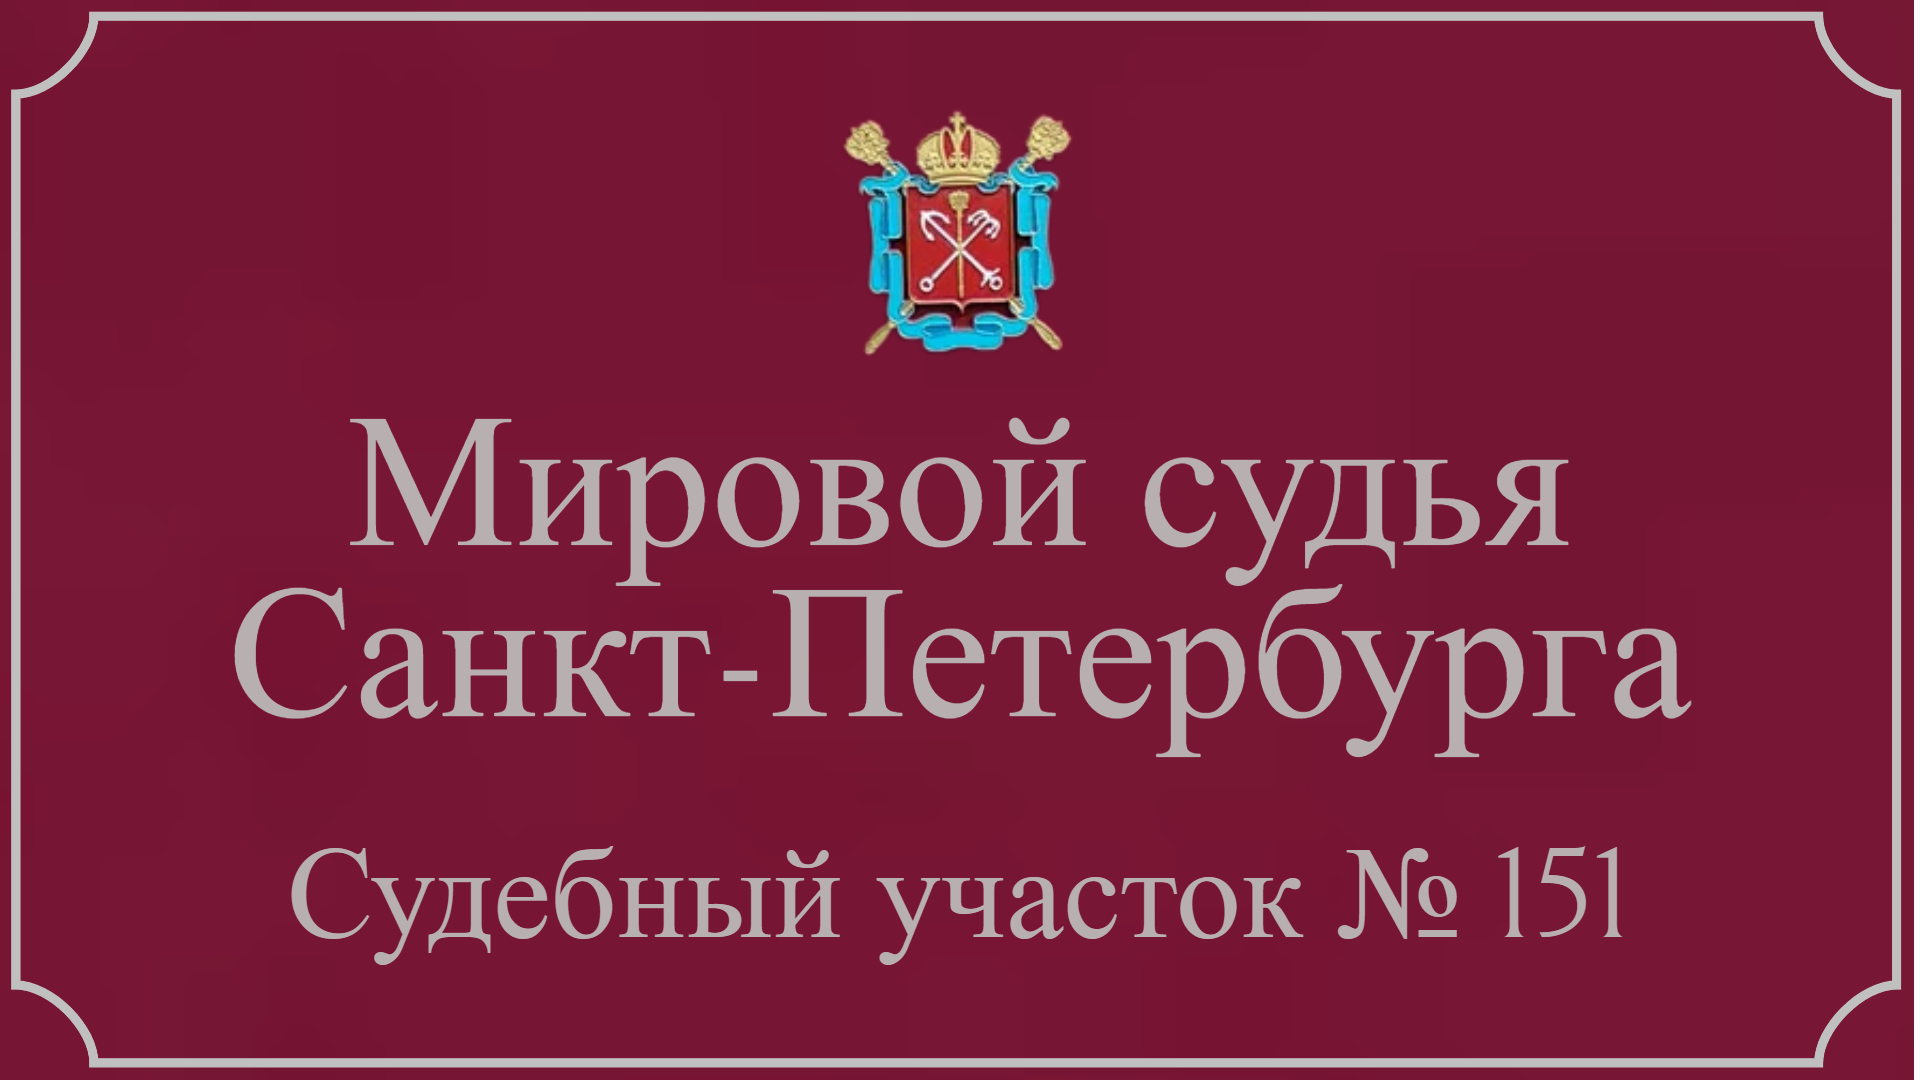 Информация по 151 судебному участку в Санкт-Петербурге.